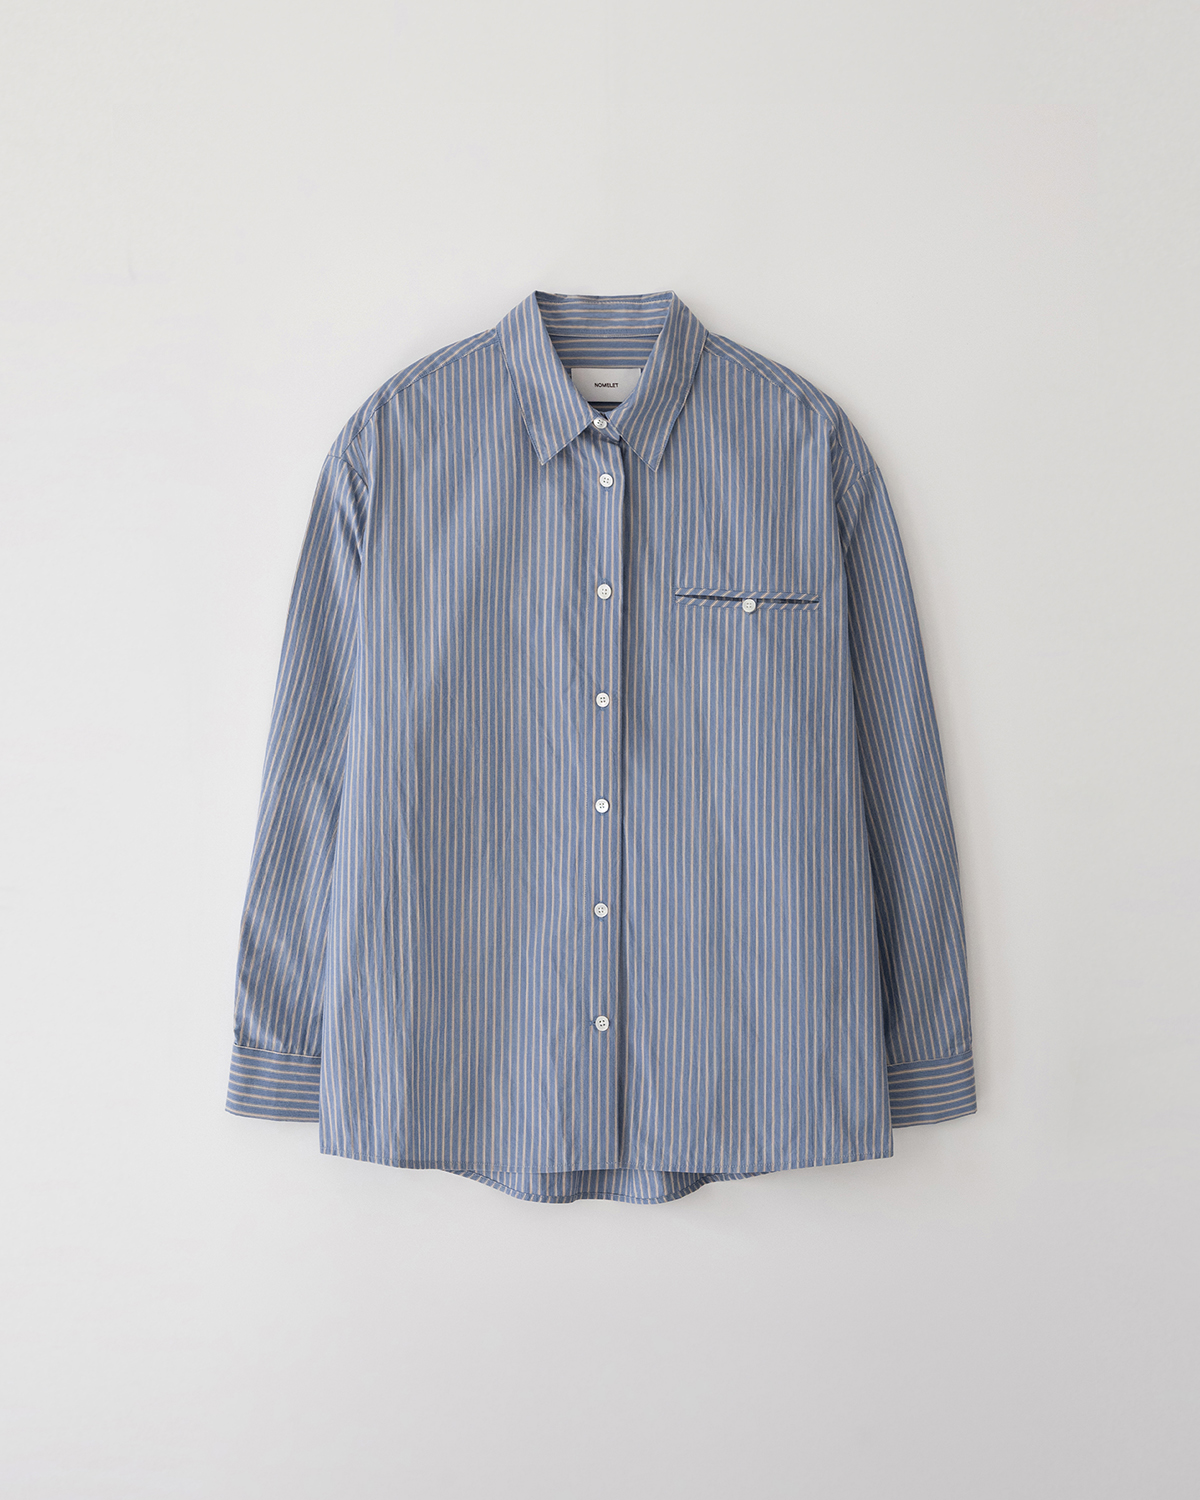 Ciel stripe shirt - vintage blue